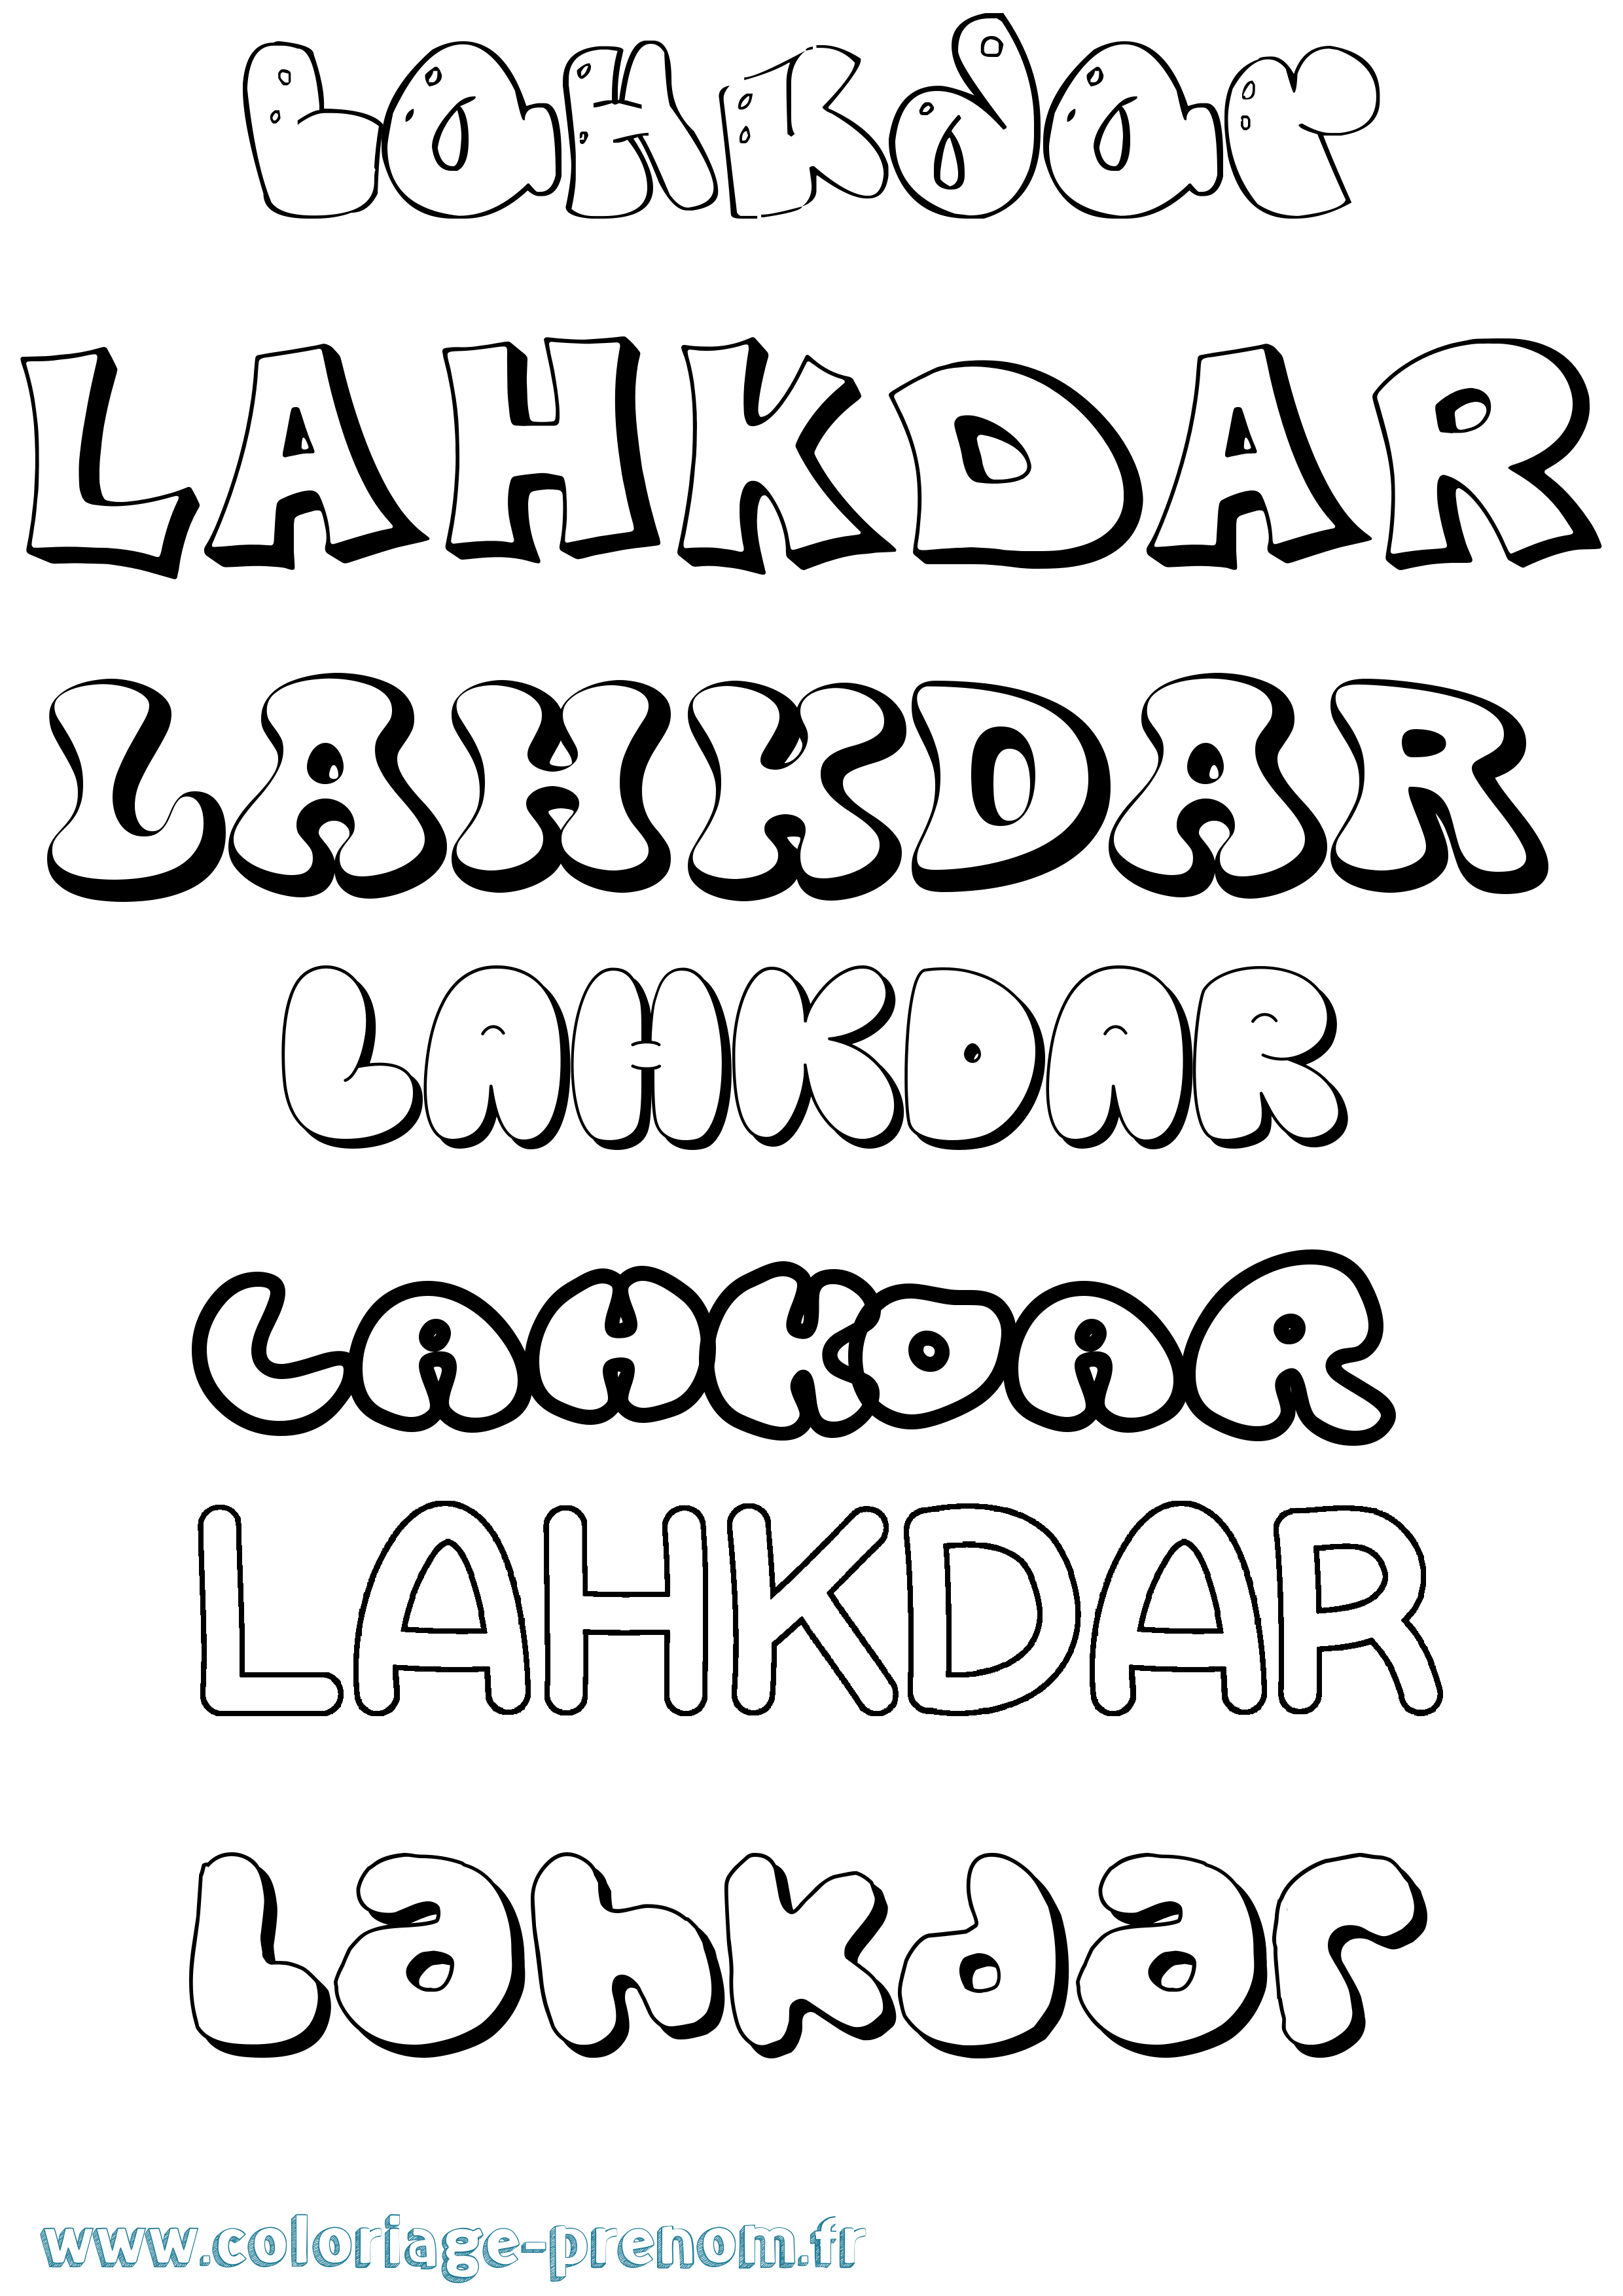 Coloriage prénom Lahkdar Bubble